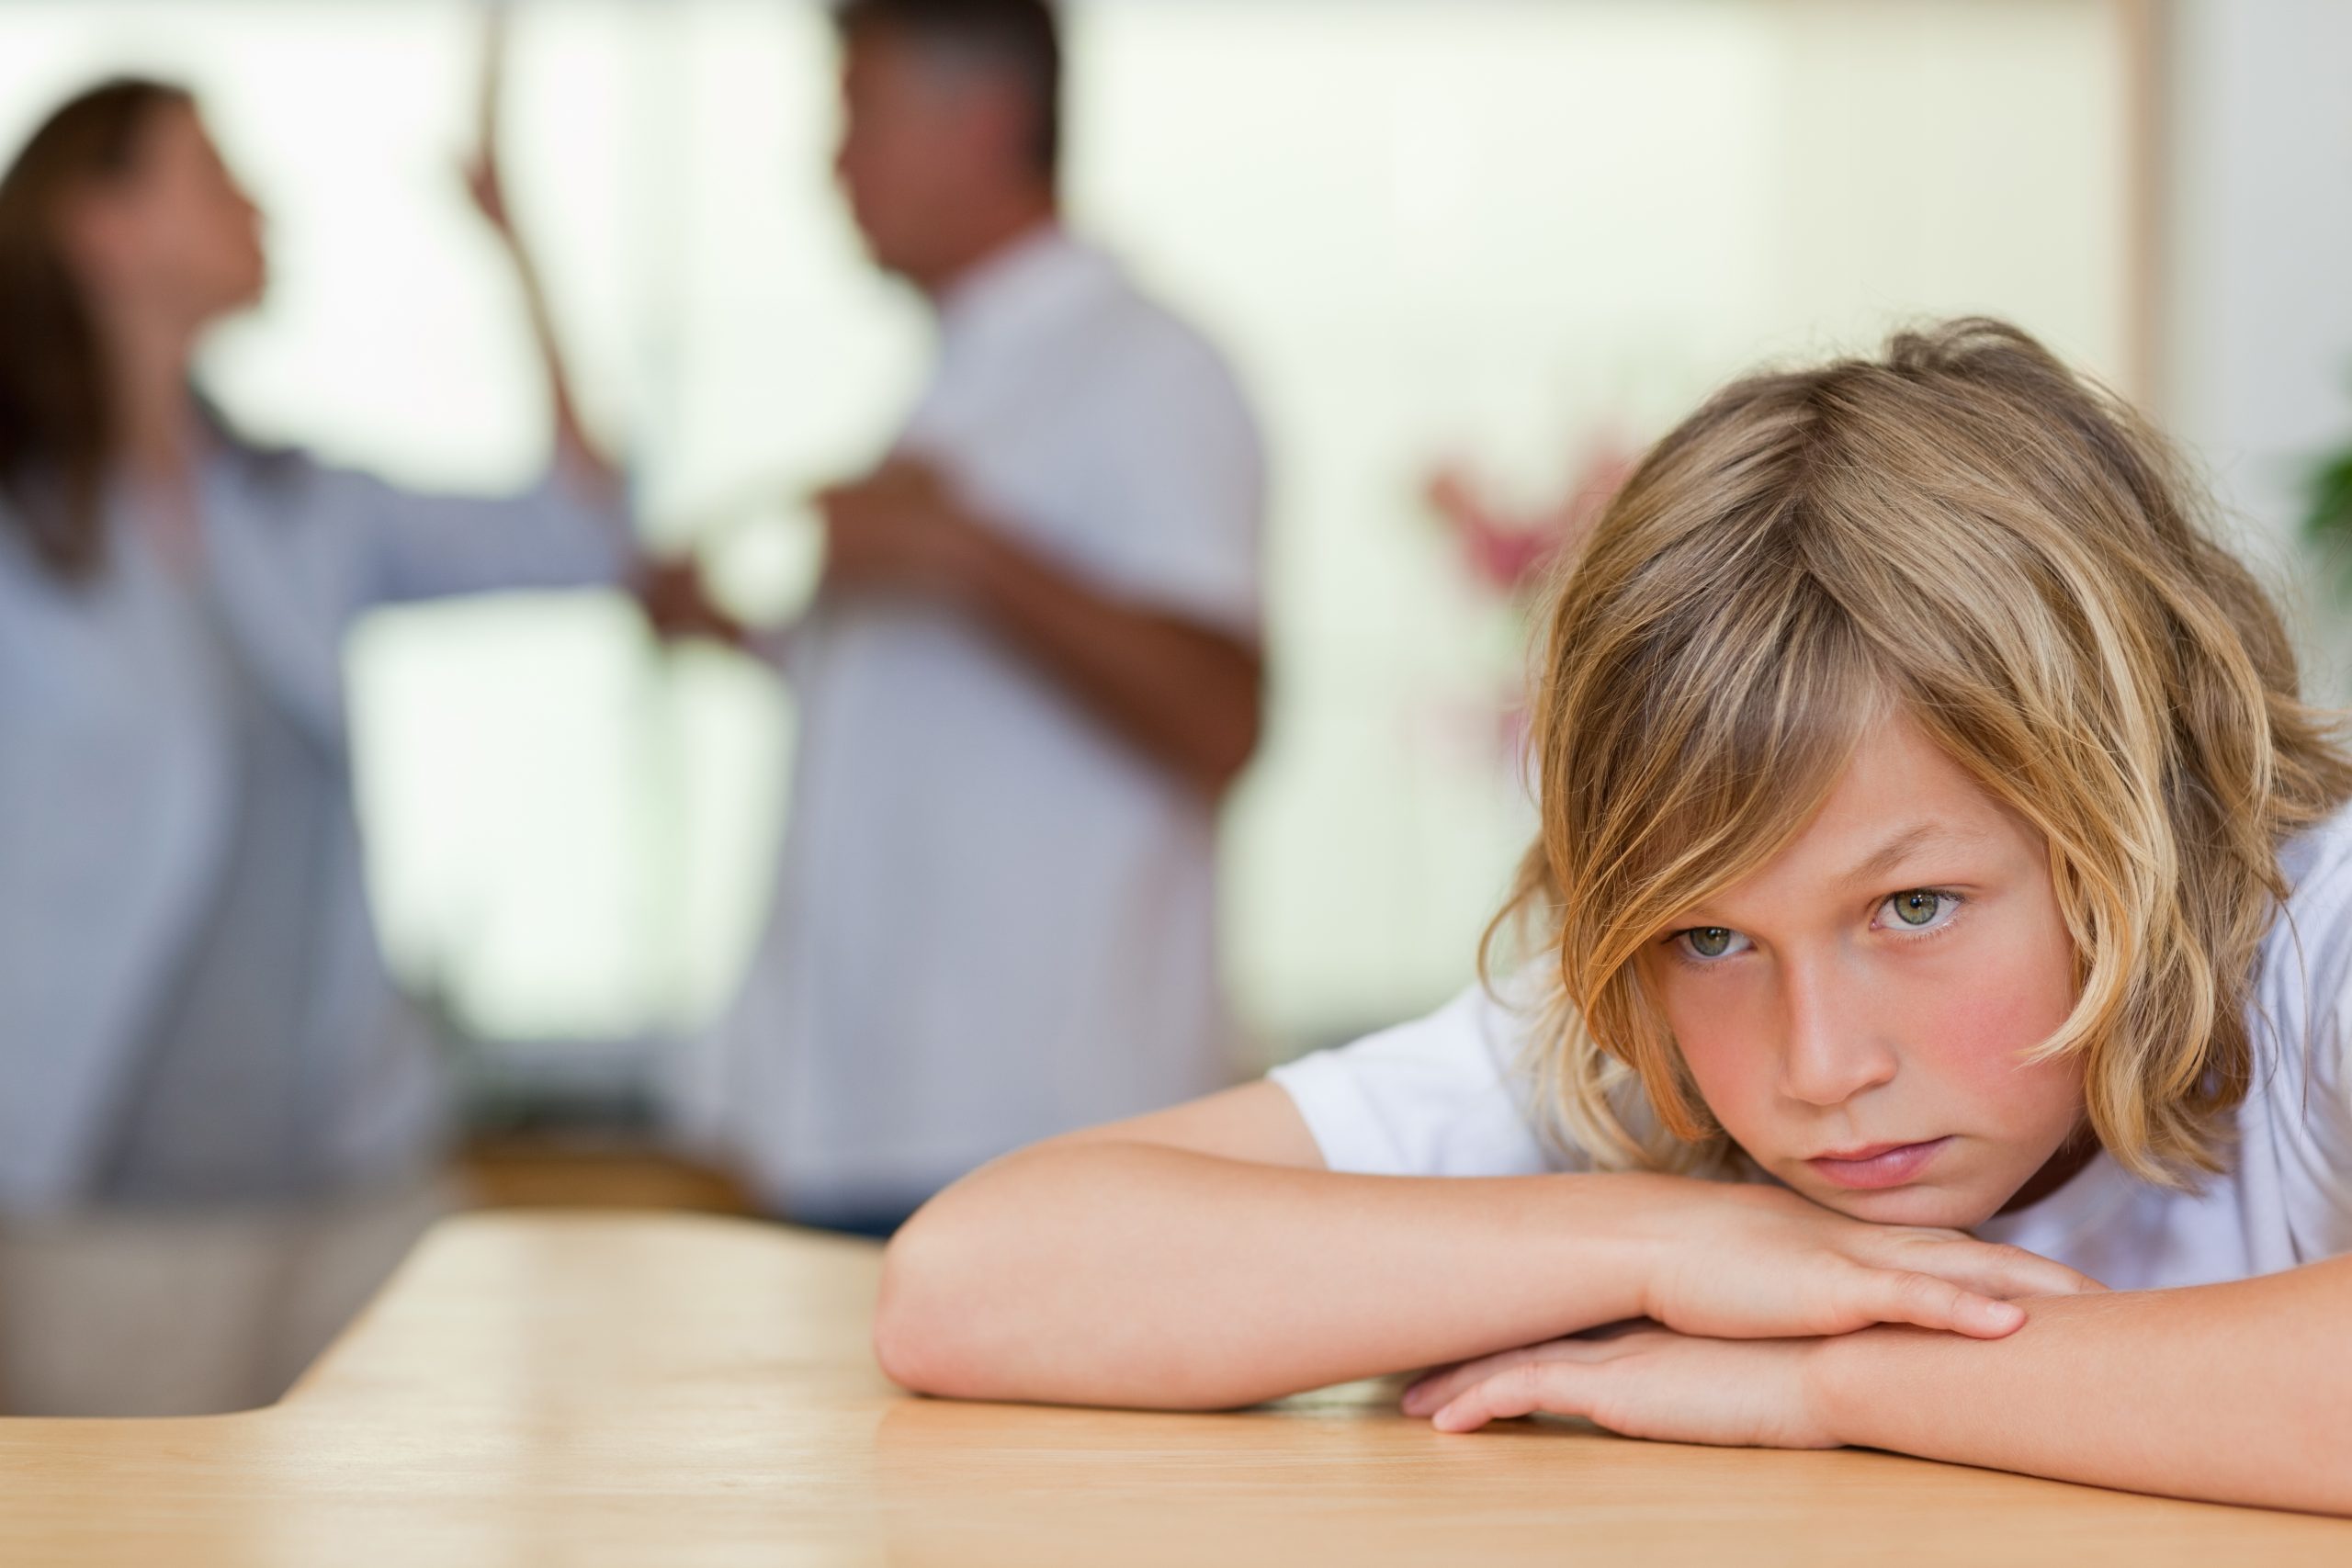 4 негативных момента влияния развода на ребенка